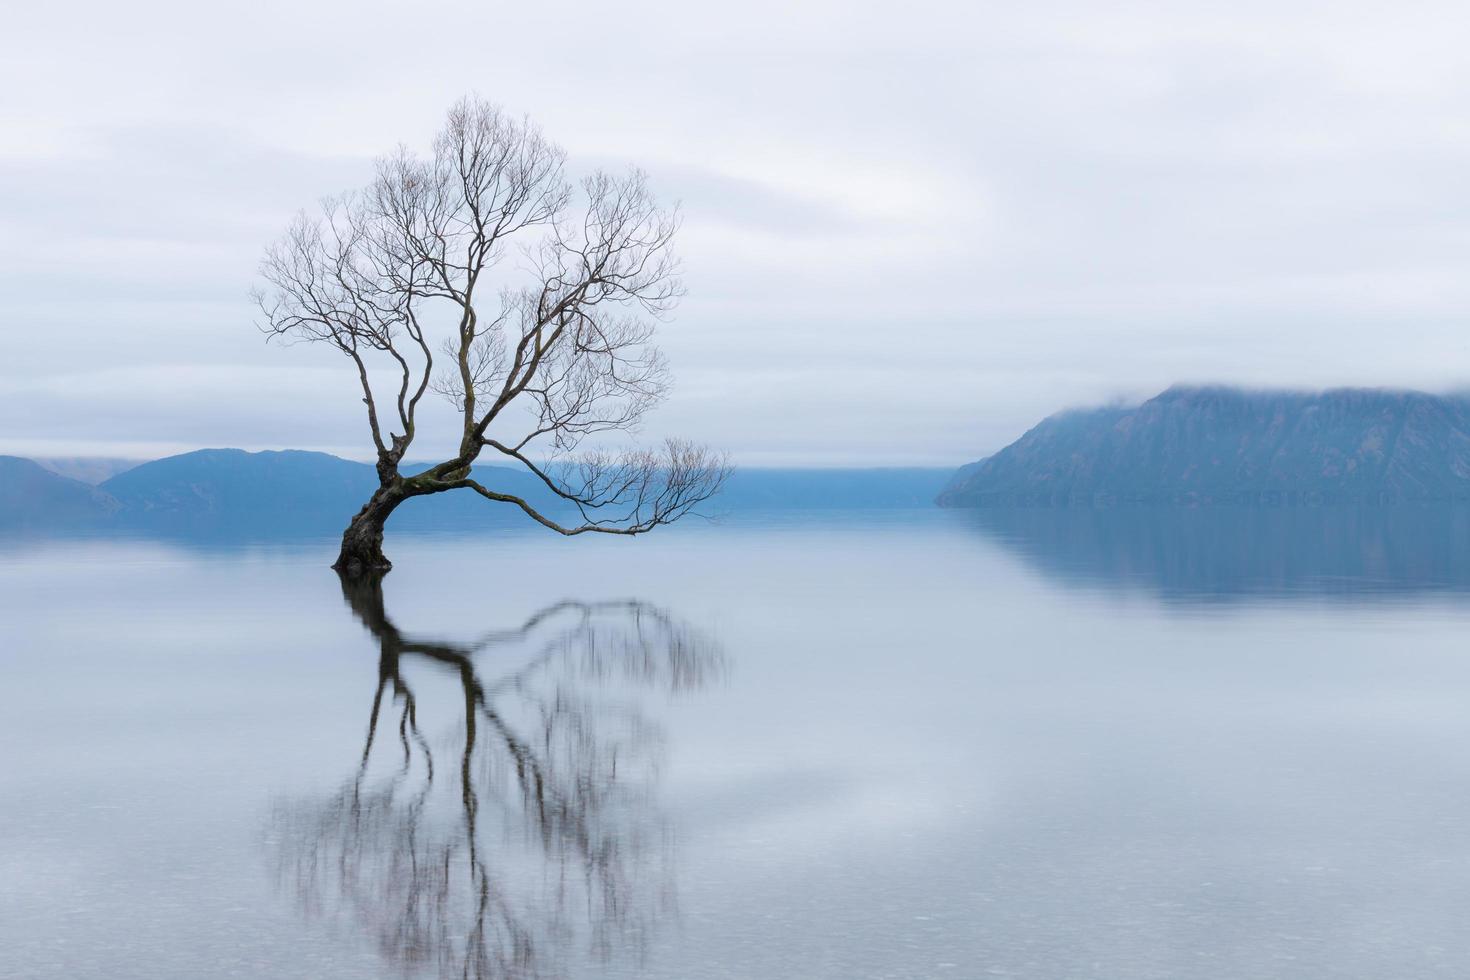 l'arbre wanaka, le saule le plus célèbre du lac wanaka en nouvelle-zélande photo